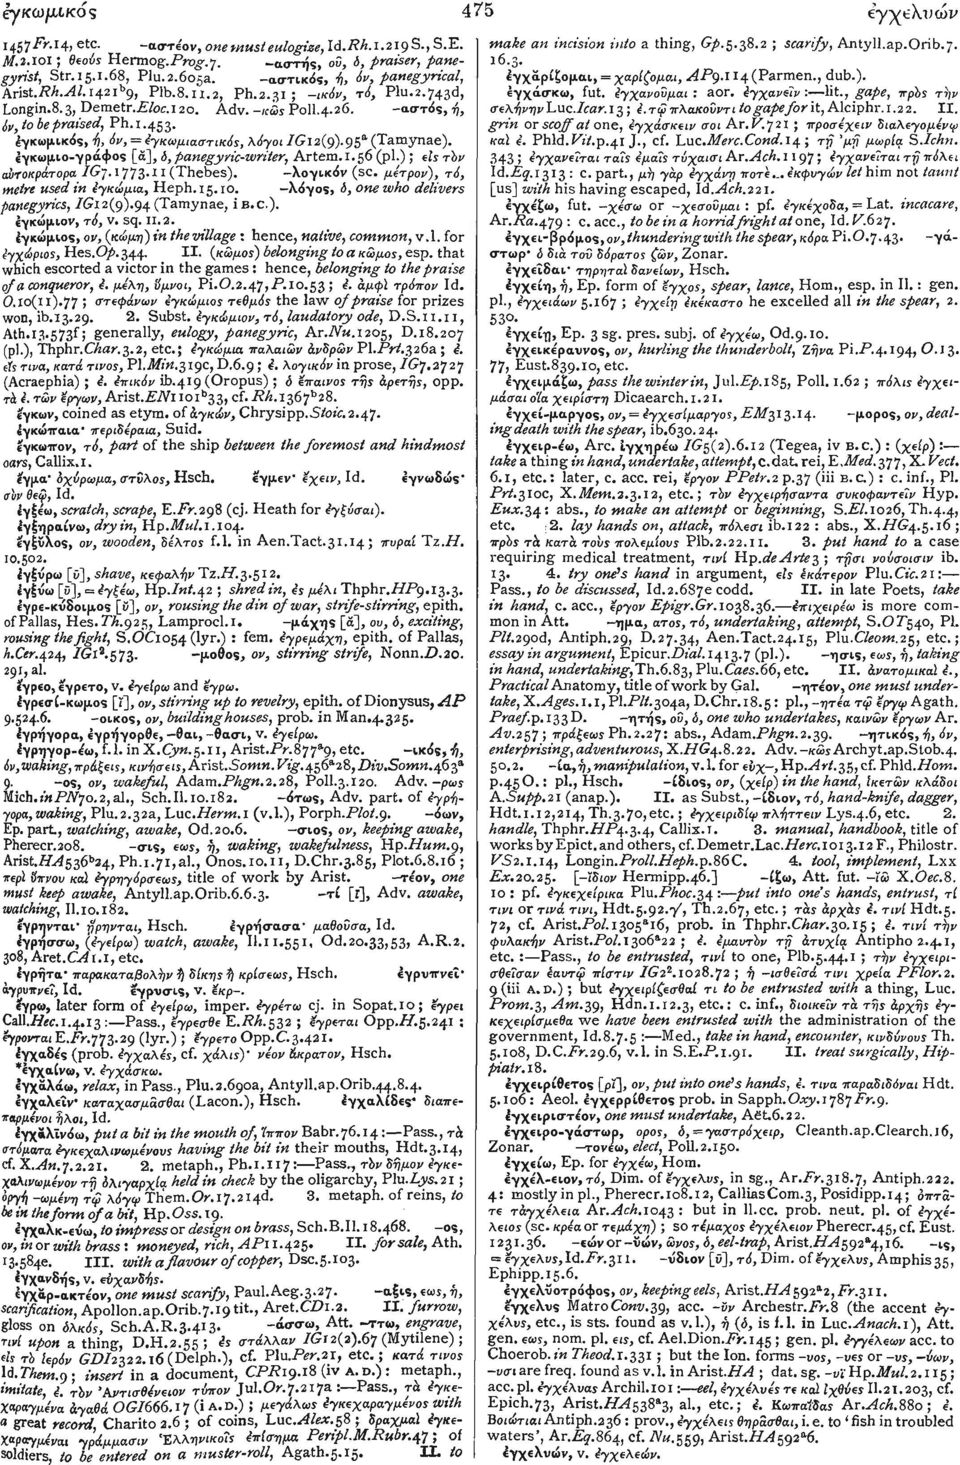 έγκωμικός, ή, όν, - εγκωμιαστικός, λόγοι /G12(9). 95 α (Tamynae). έγκωμιο-γράφος [α], δ, panegyric-writer, Artem. 1.56 (pi.) ; είς τόν αυτοκράτορα IGj..( H(Thebes 1773 -λογικόν (sc.